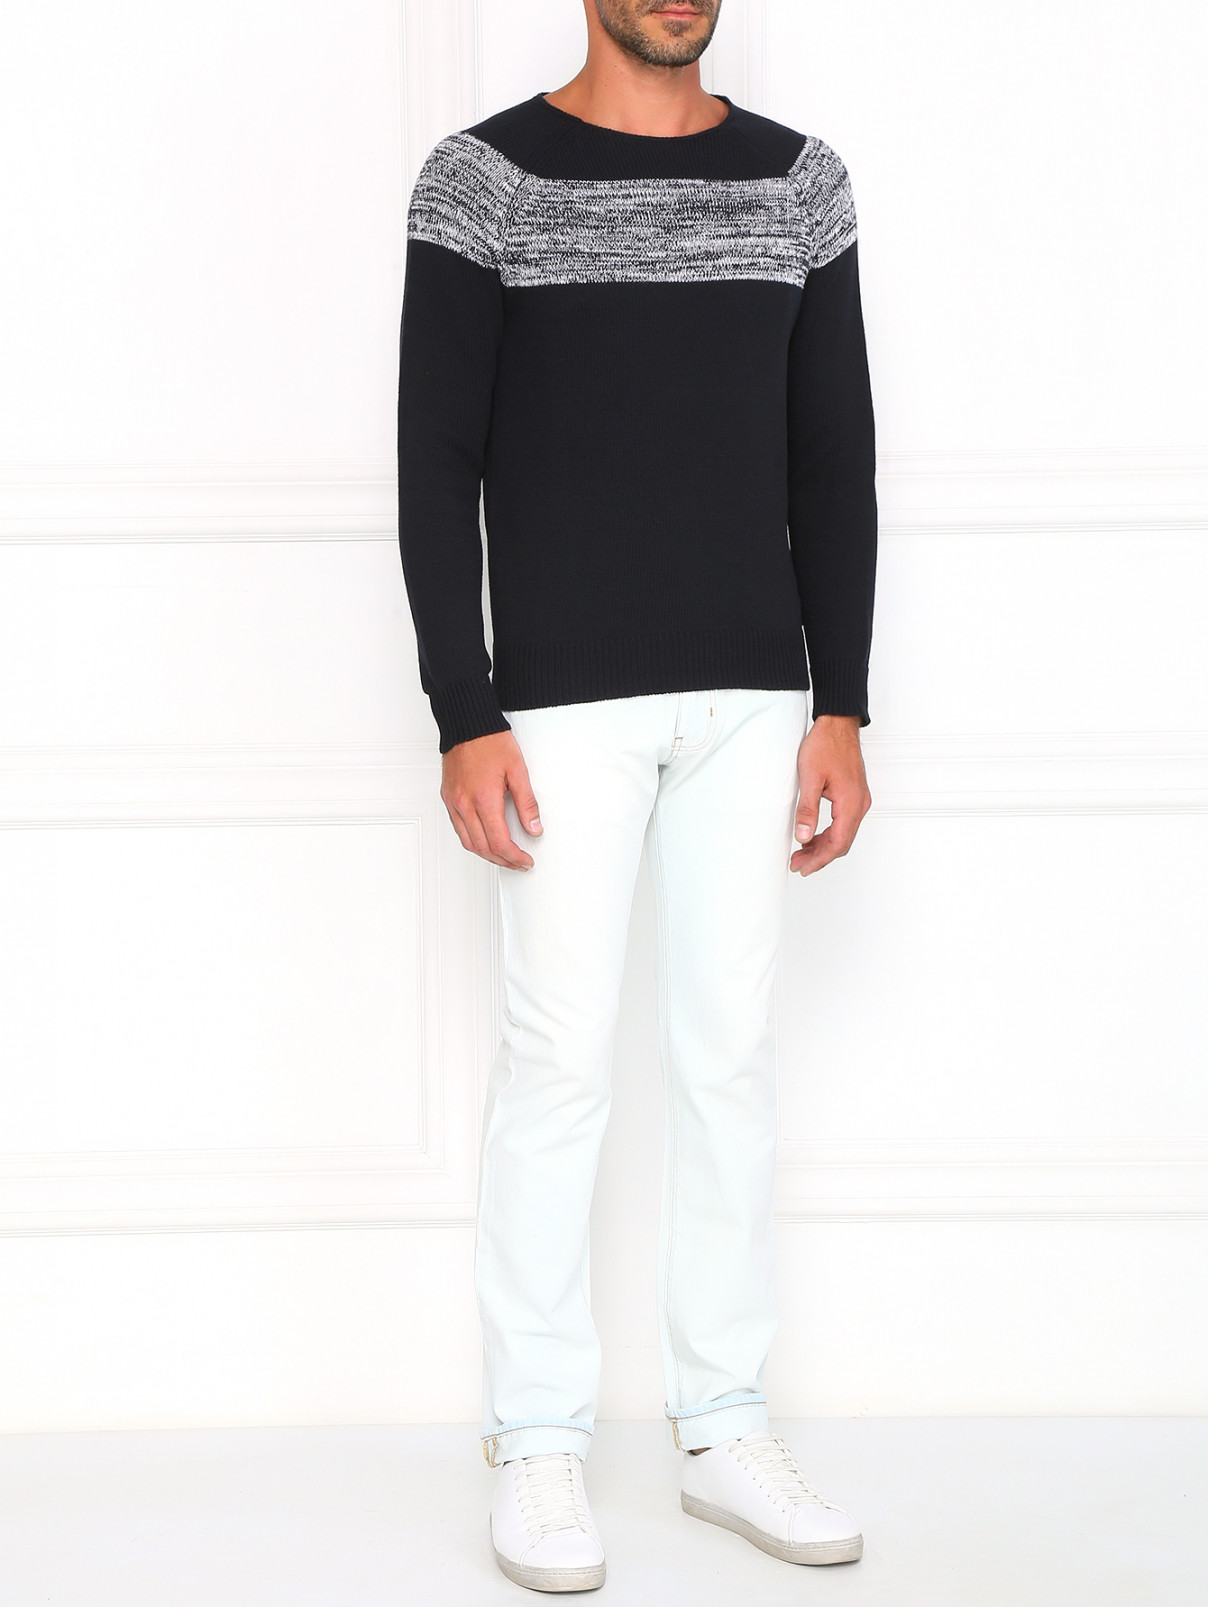 Джемпер из хлопка с контрастной вставкой Armani Jeans  –  Модель Общий вид  – Цвет:  Черный